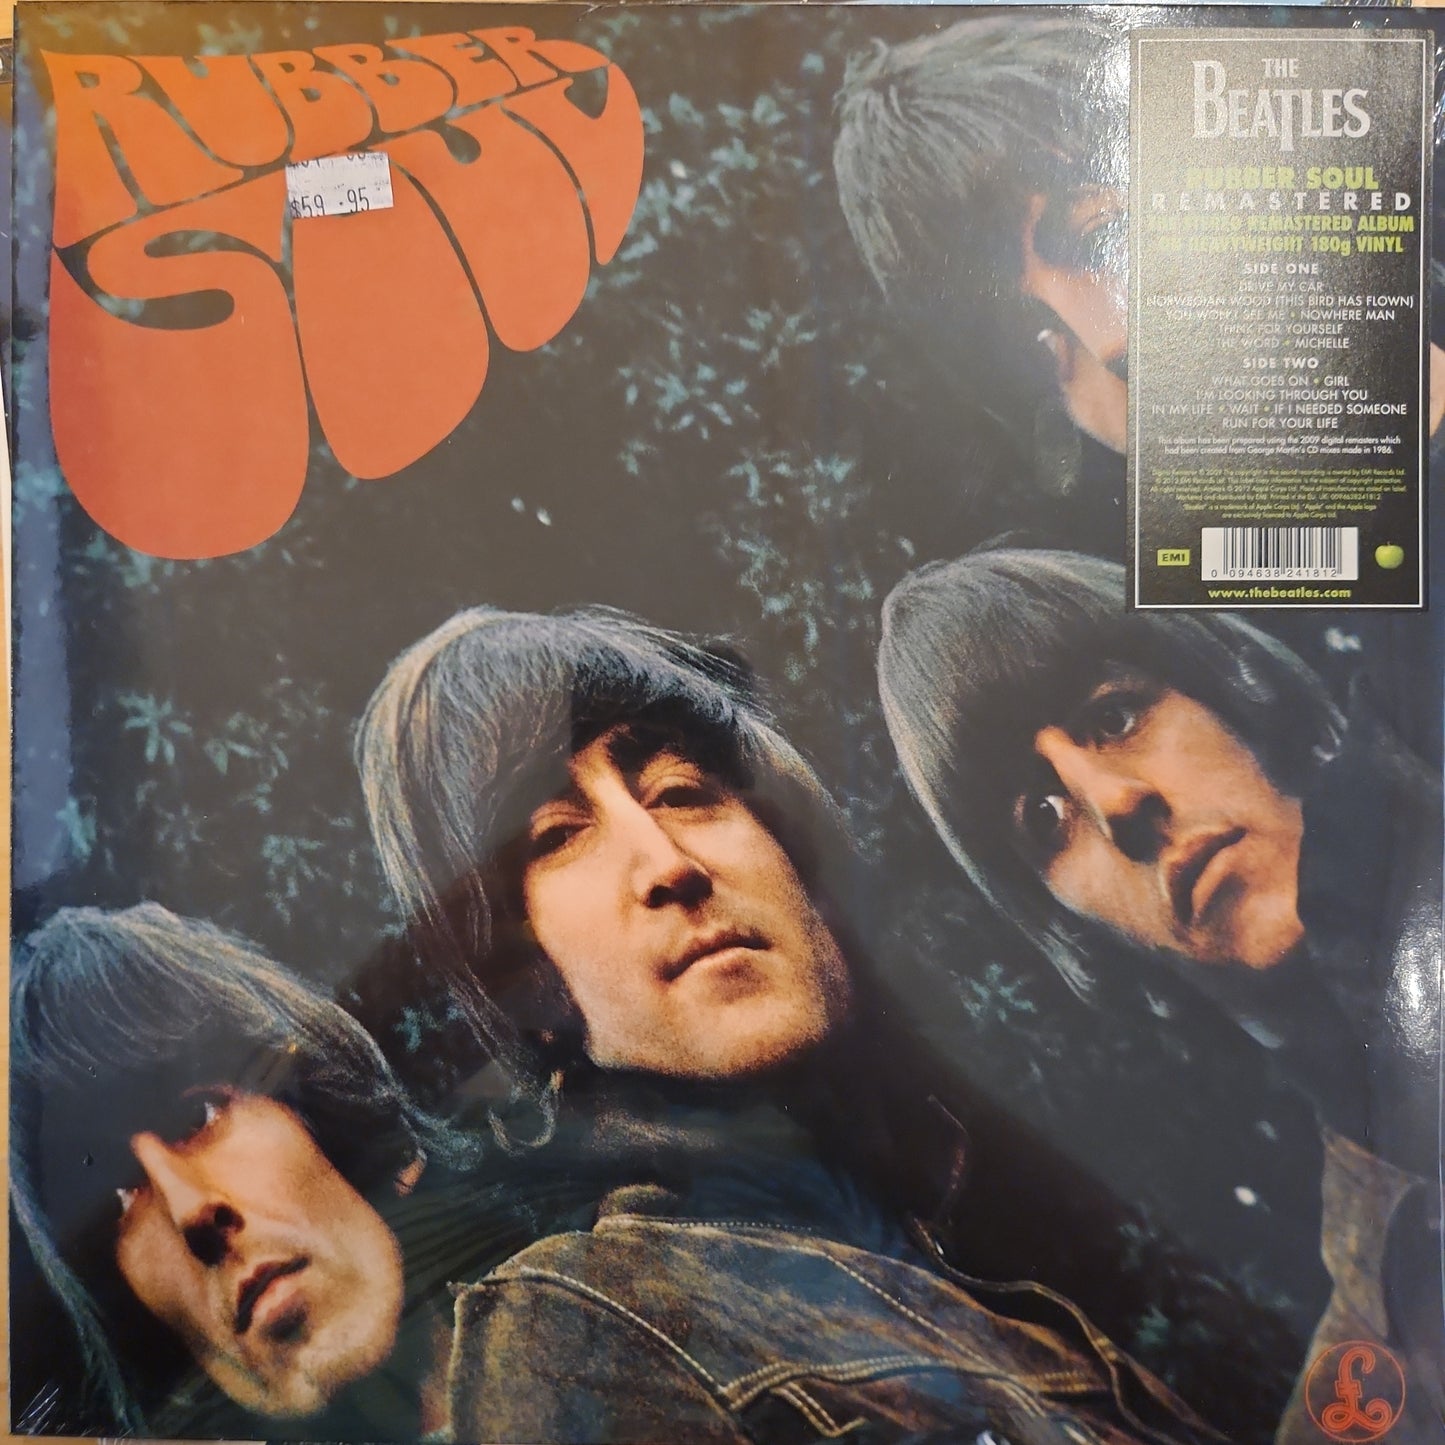 The Beatles - Rubber Soul - 180g Vinyl Edition